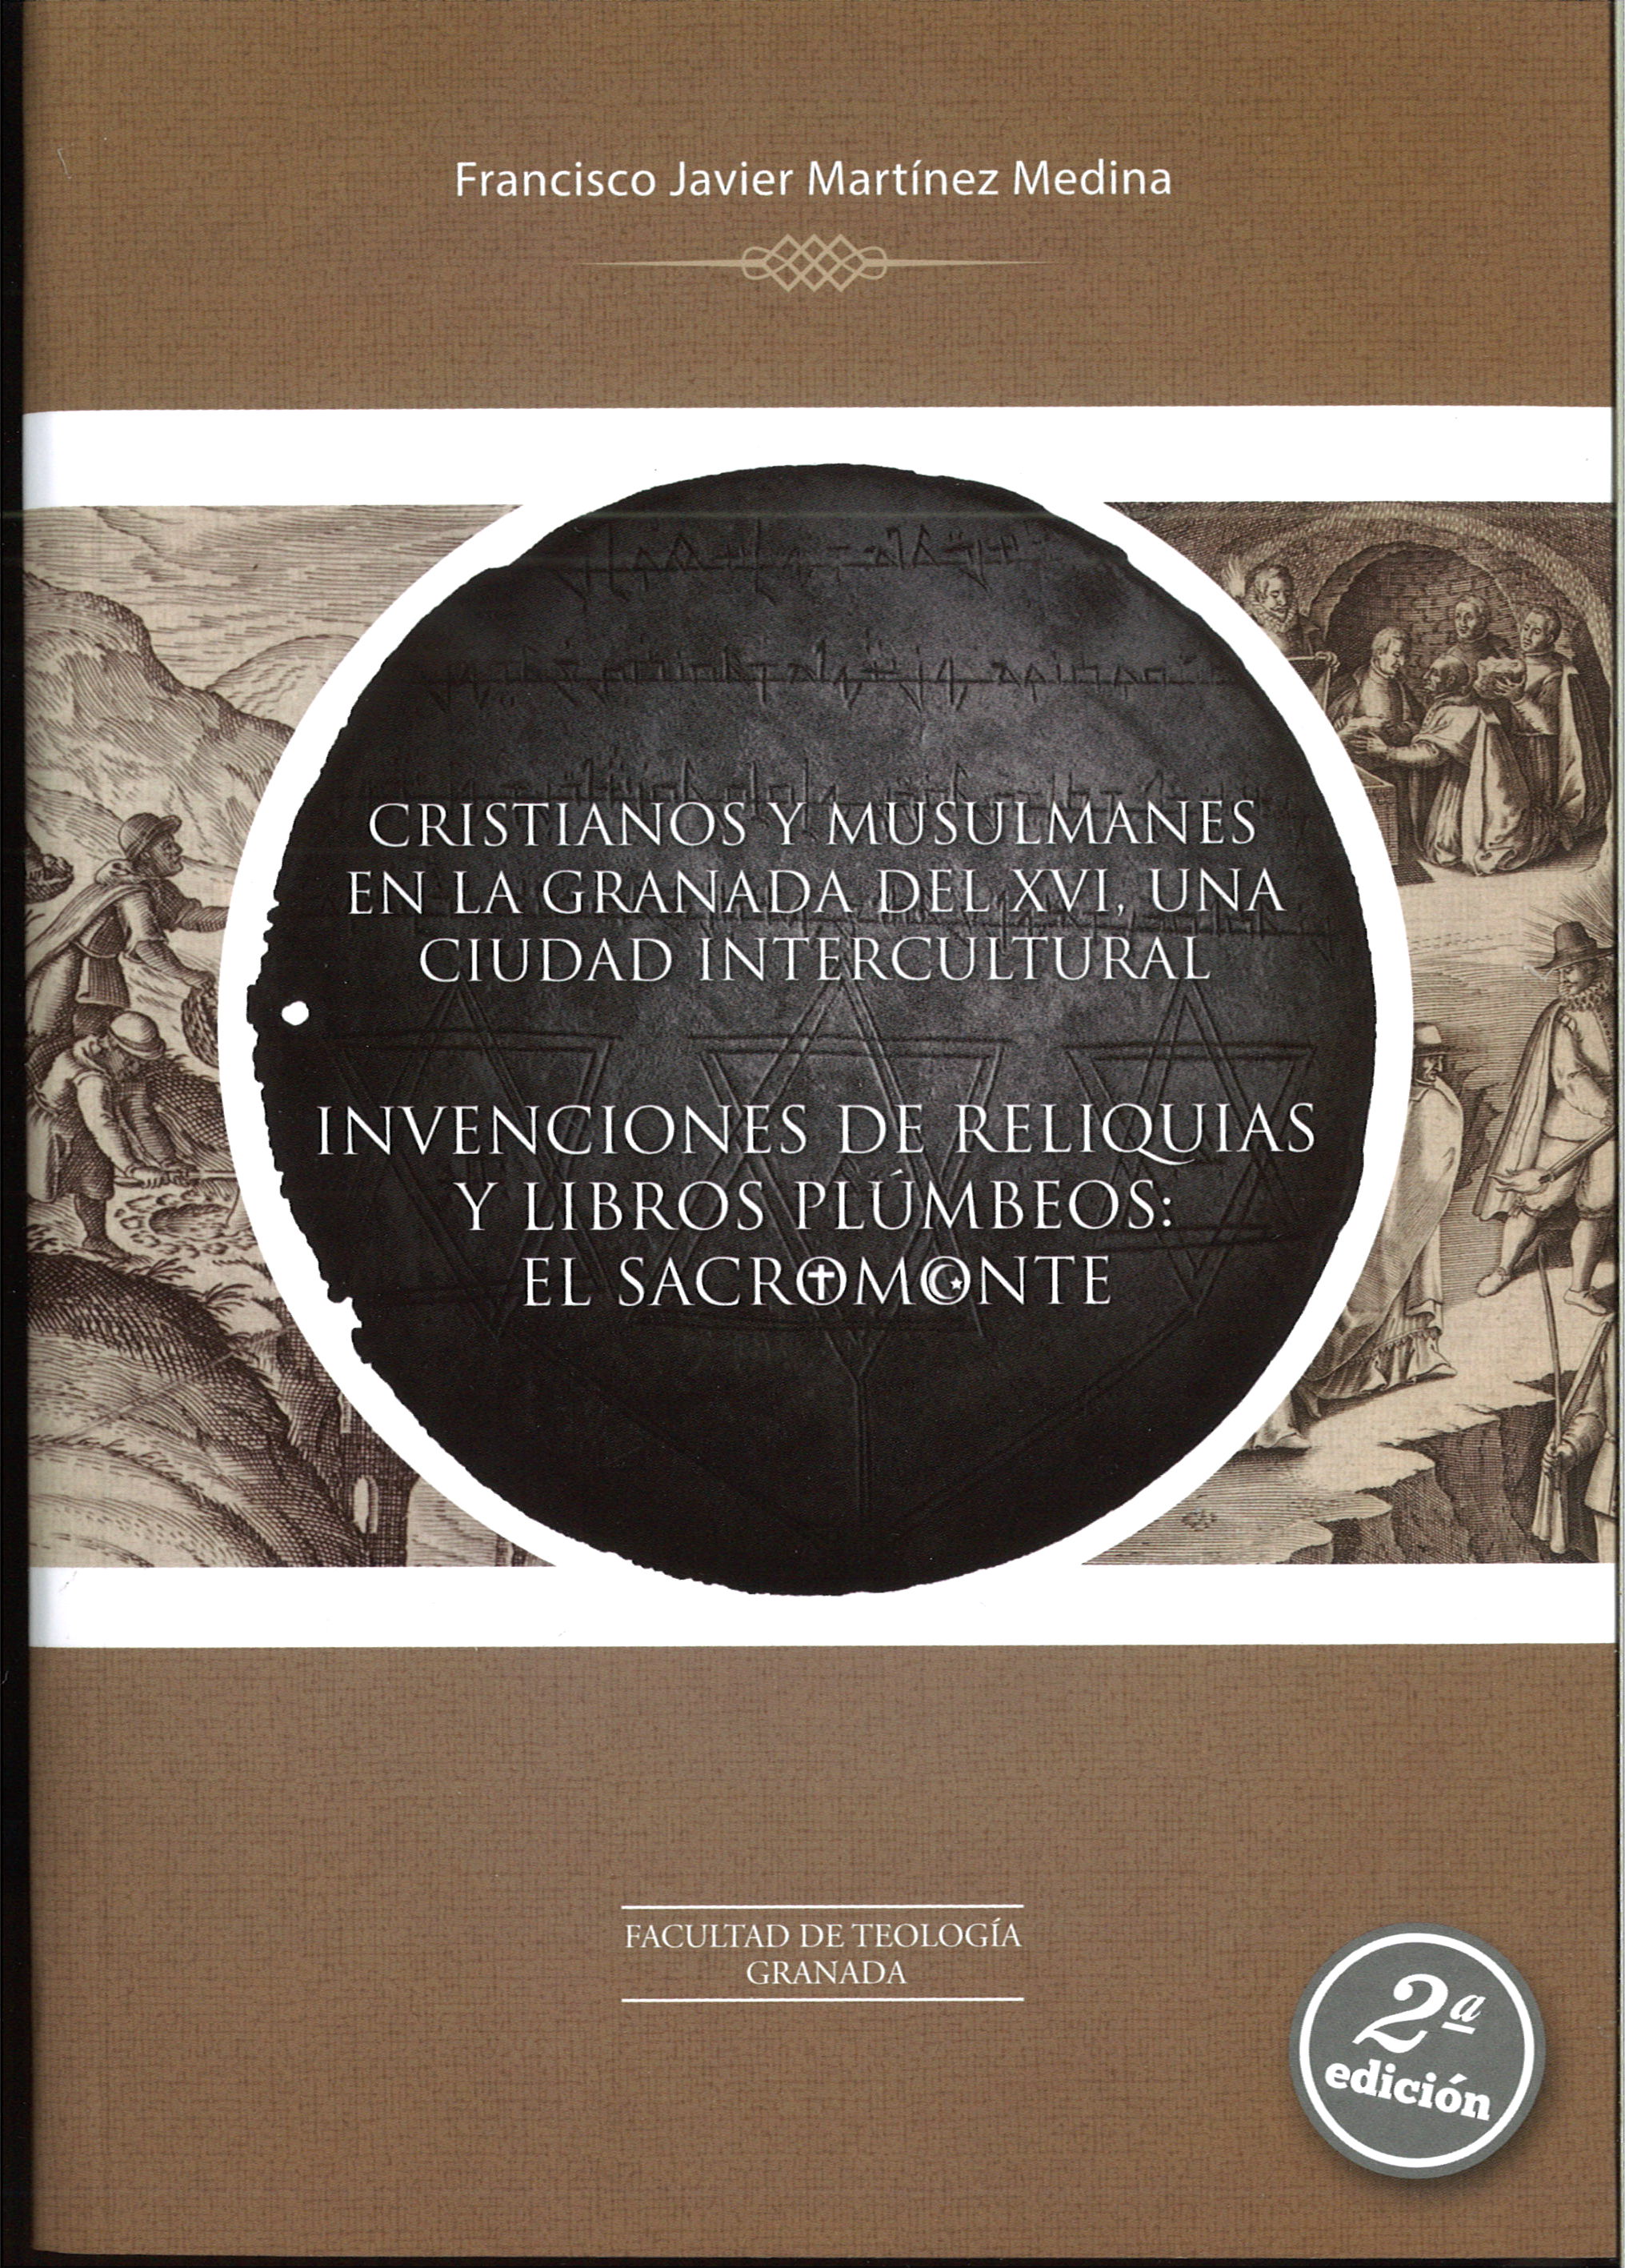 Imagen de portada del libro Cristianos y musulmanes en la Granada del XVI, una ciudad intercultural